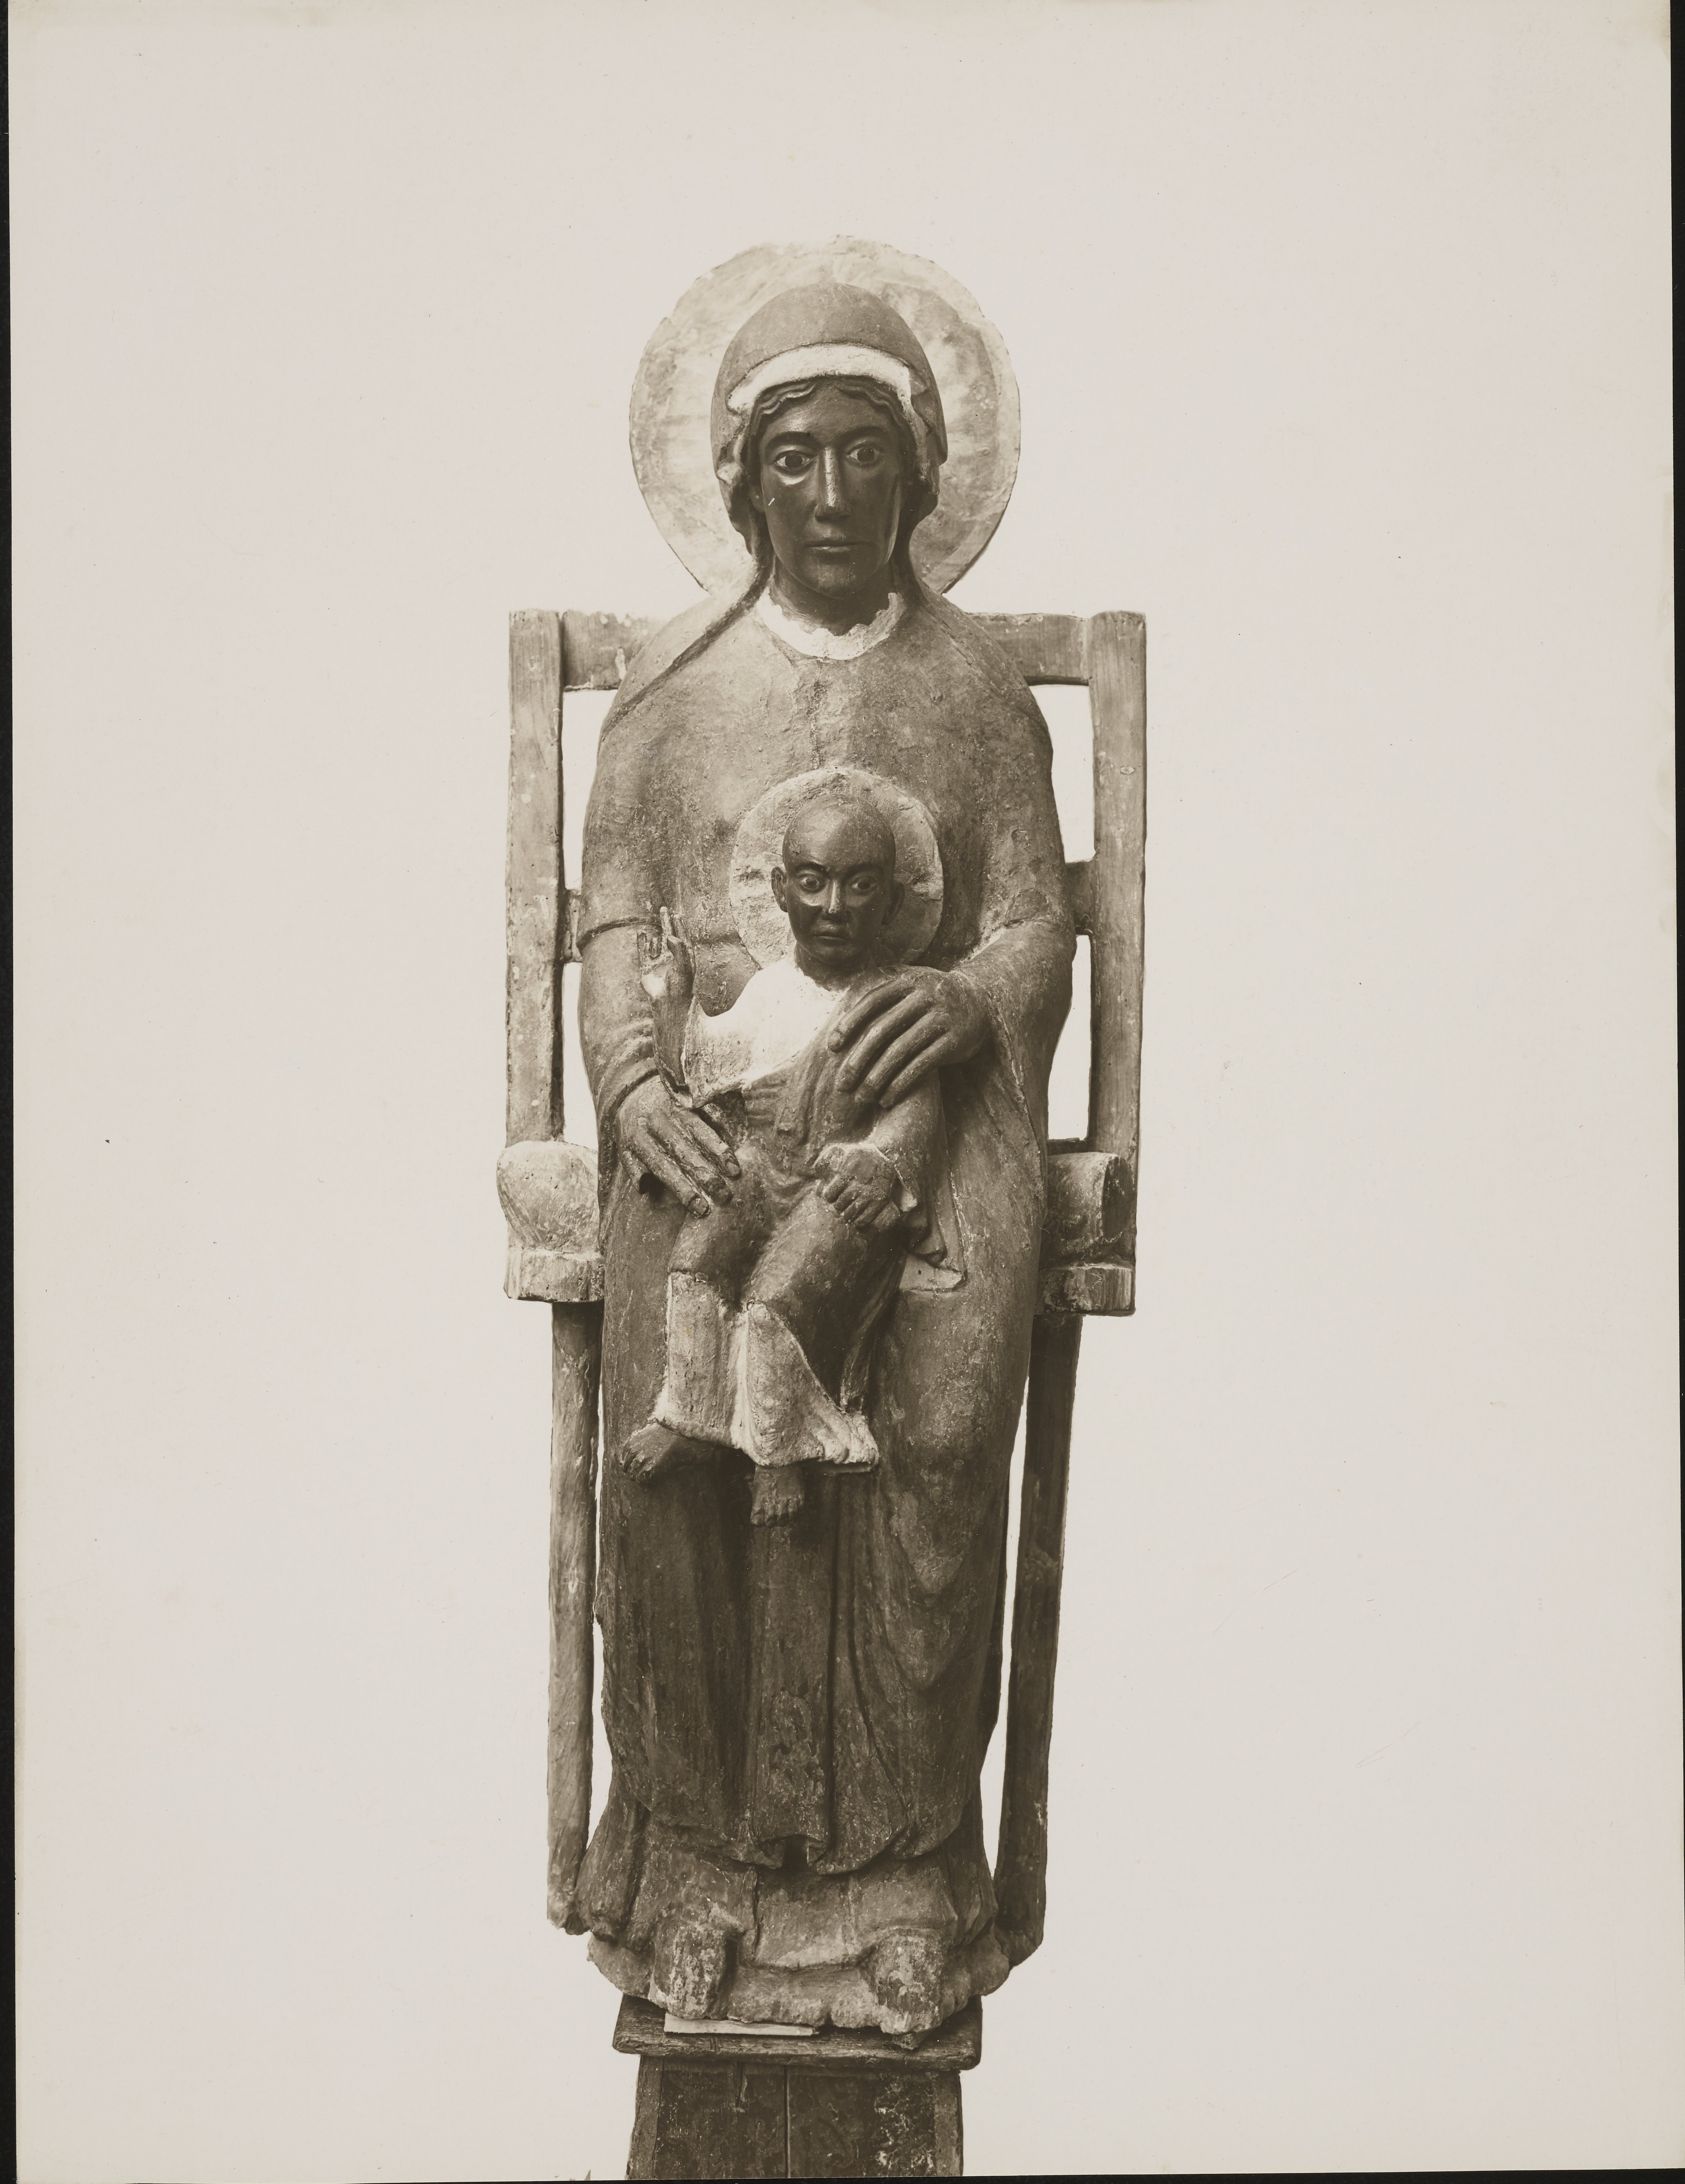 Autore non identificato, Manfredonia - Basilica di S. Maria Maggiore di Siponto, Madonna in trono con il Bambino, 1925, gelatina ai sali d'argento, MPI6014881